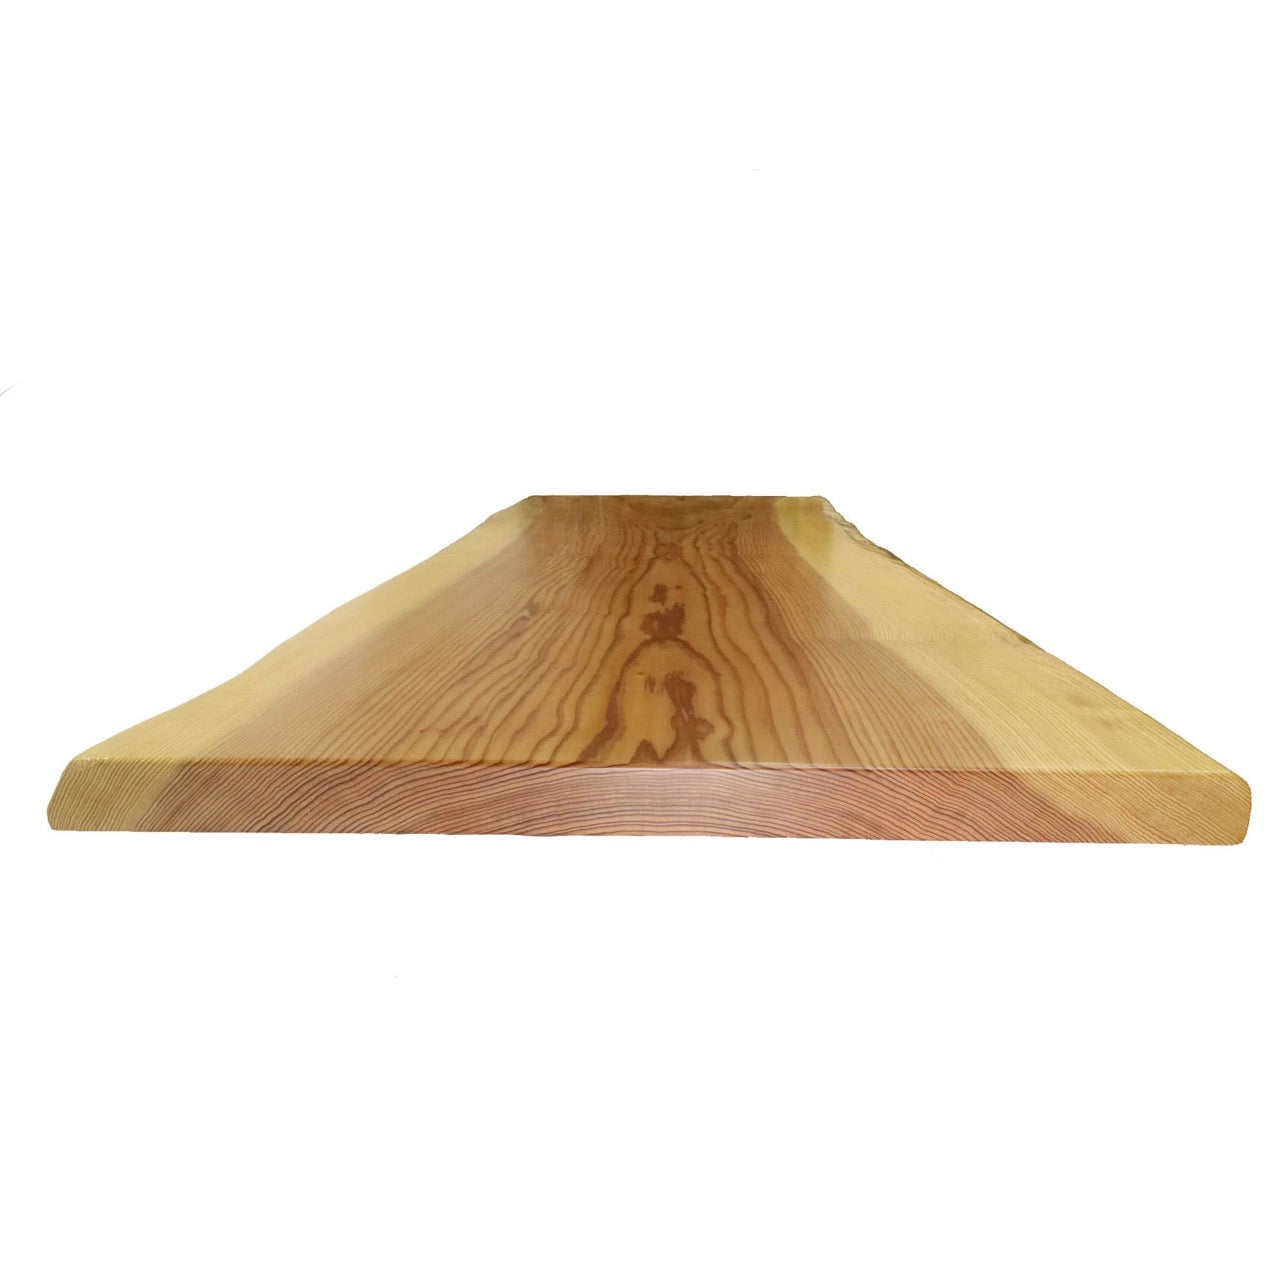 A0002 徳島産杉無垢一枚板 テーブル天板 1,650mm×730mm×55mm